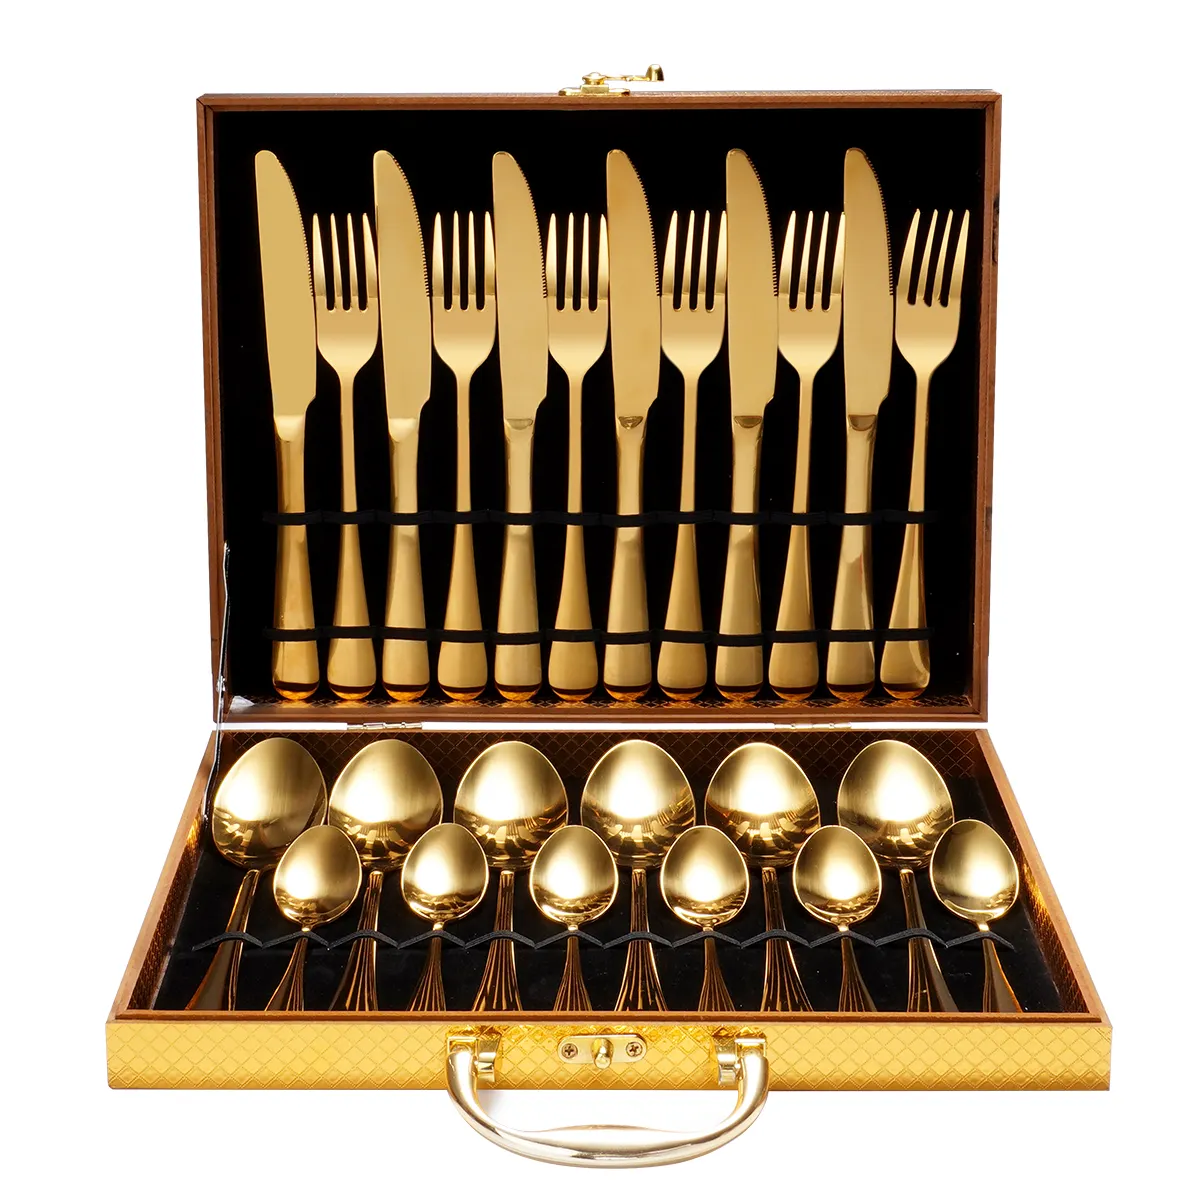 Stainless Steel Cutlery 24Pcs Inox Dourados Conjunto De Talheres Tenedores De acero Inox Metal Dorados Juego De Cubiertos